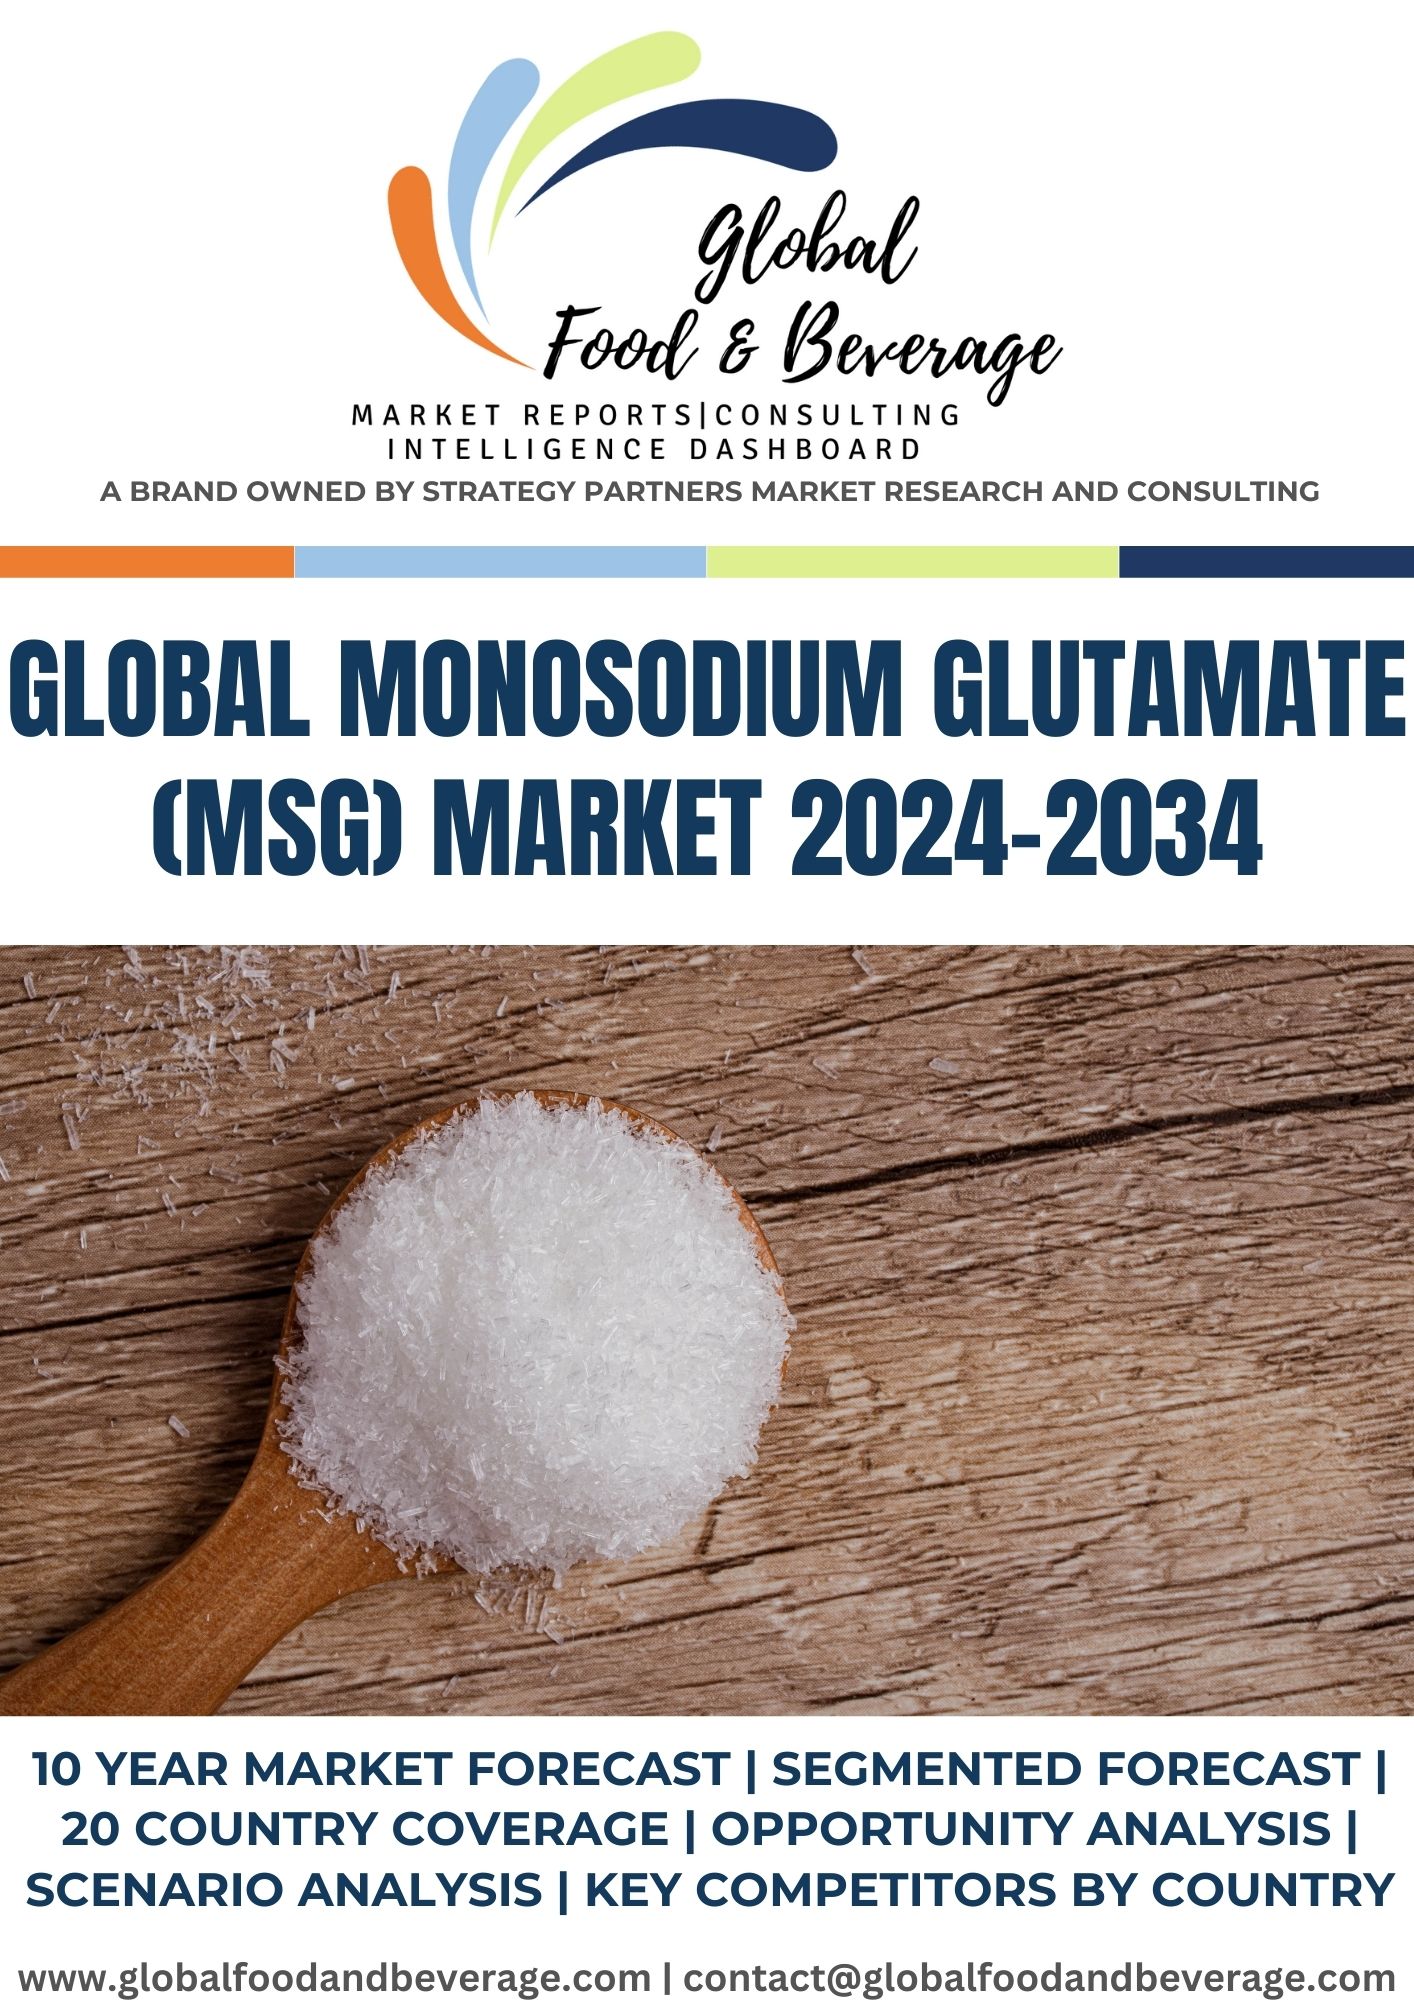 What Is MSG (Monosodium Glutamate)?